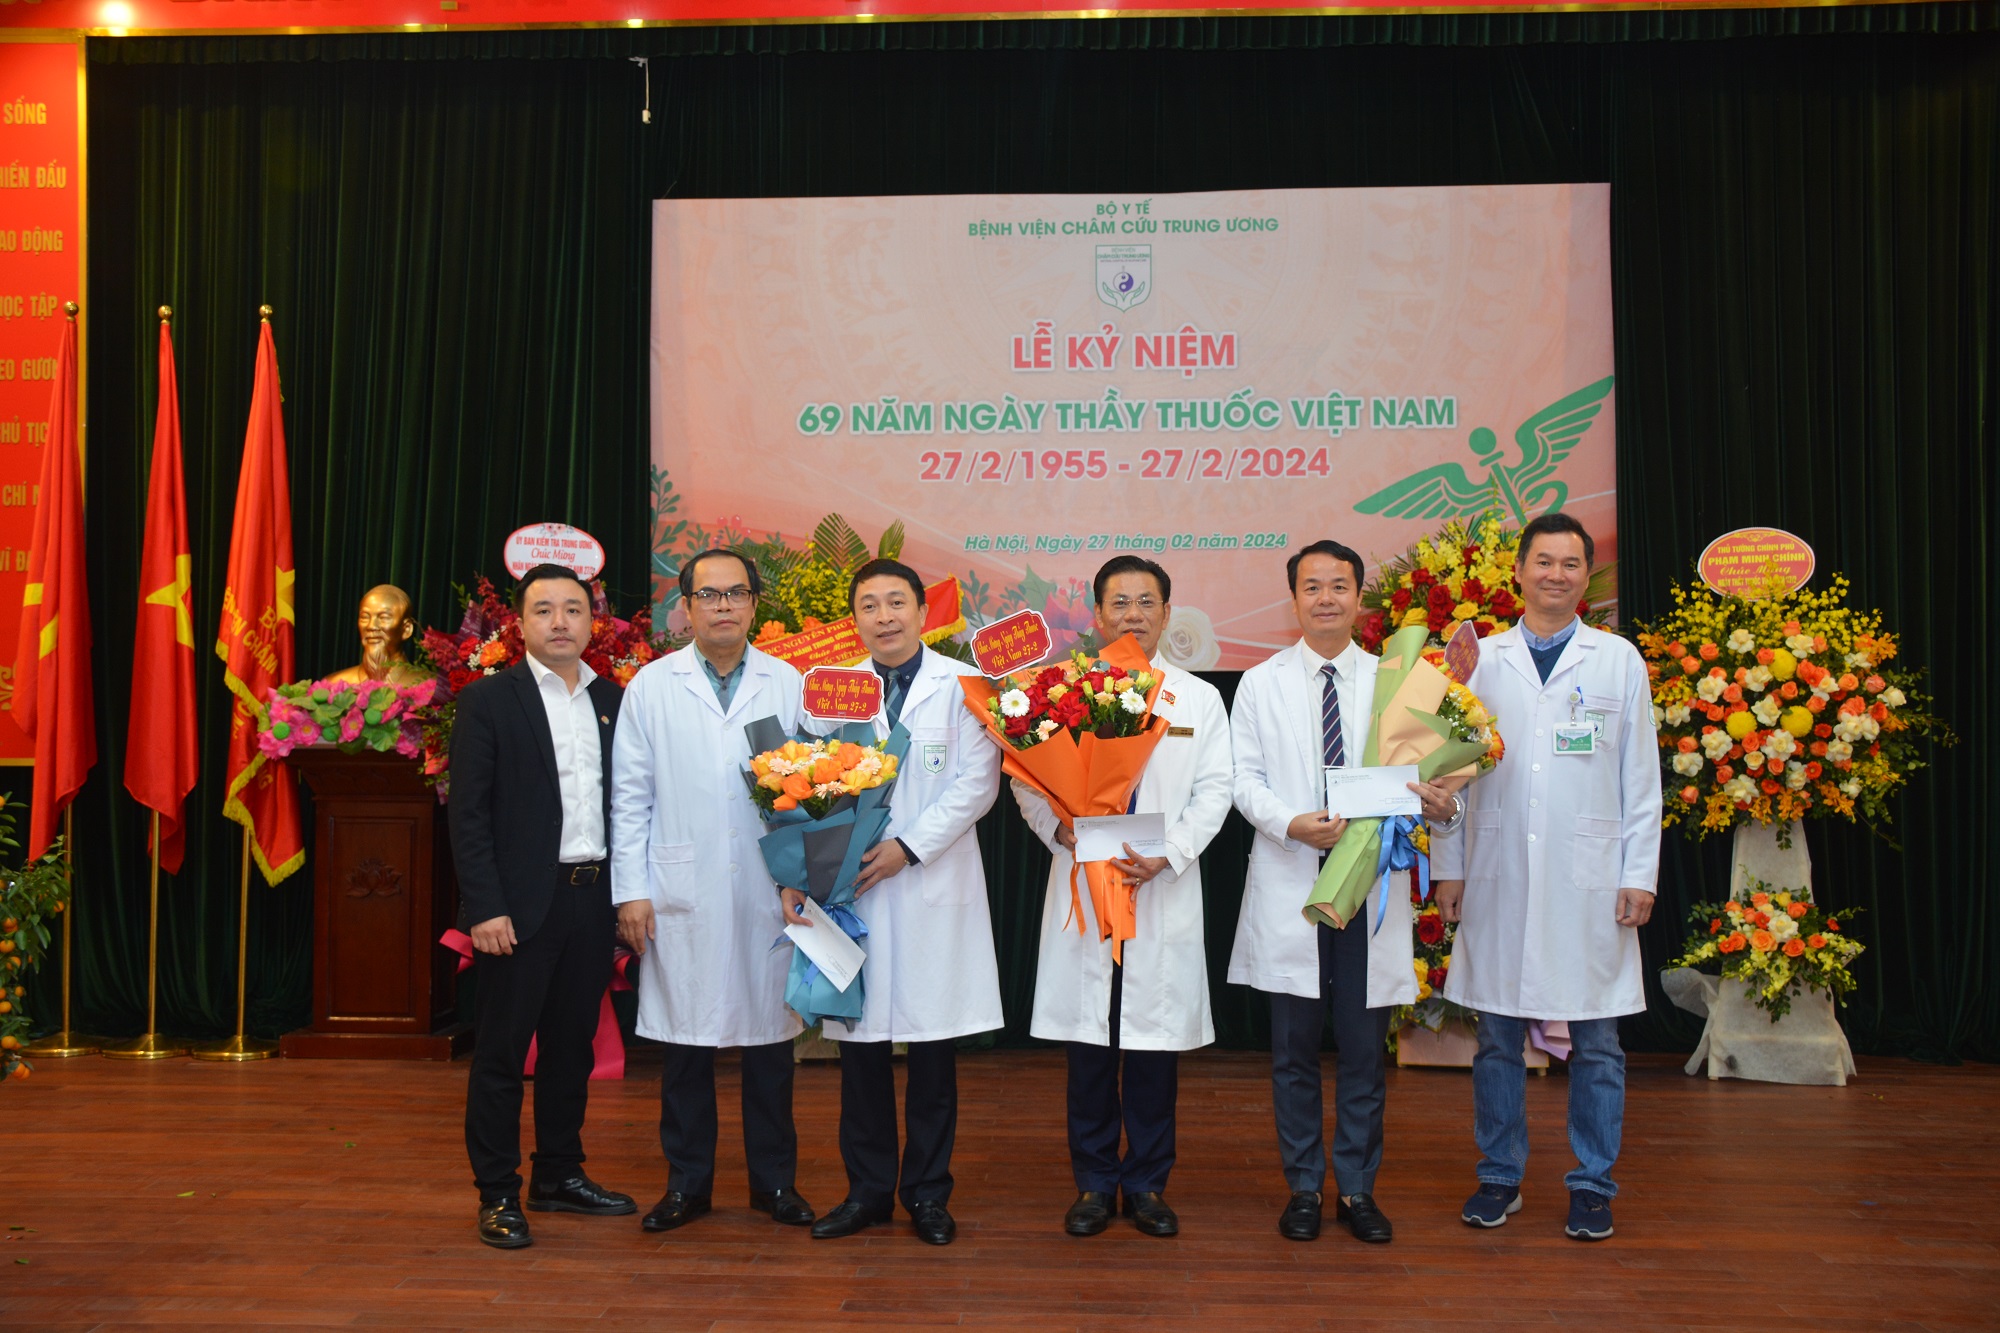 Chào mừng 69 năm ngày thầy thuốc Việt Nam